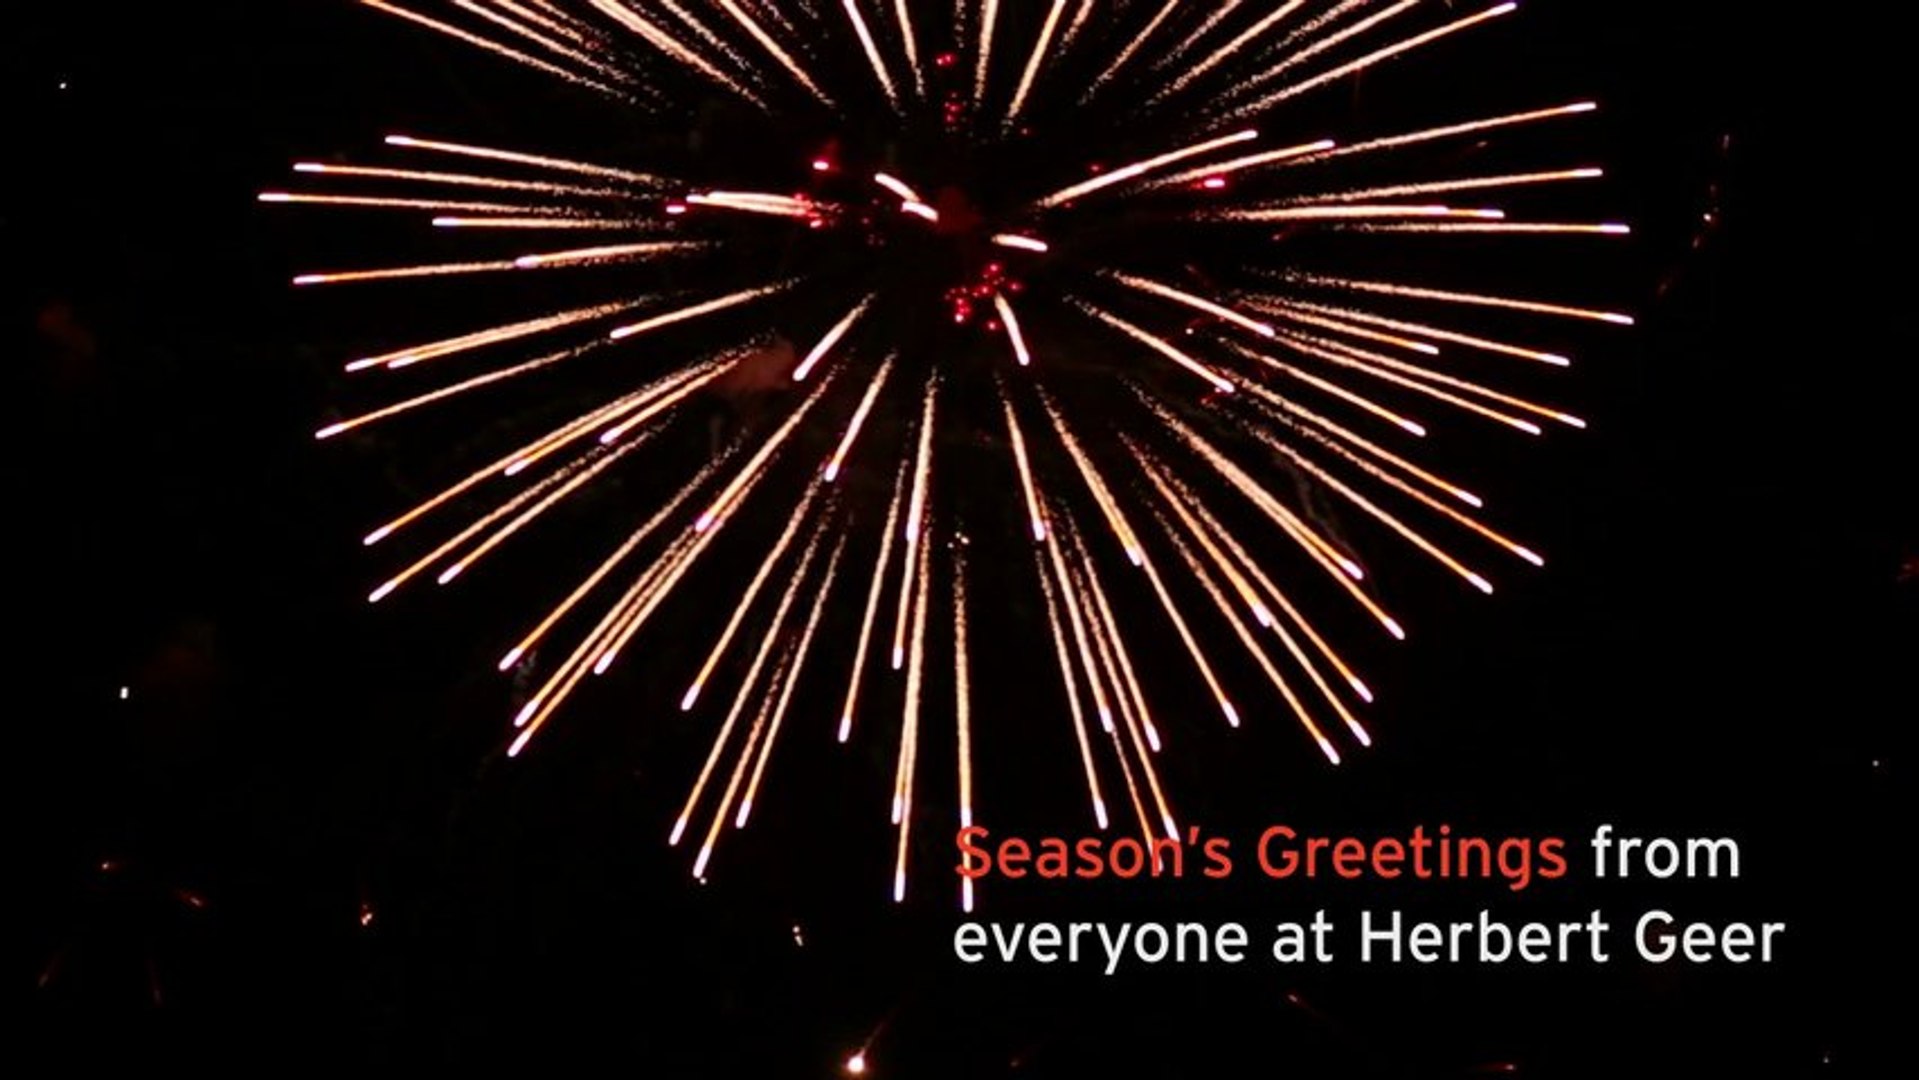 Herbert Geer Season's Greetings 2013